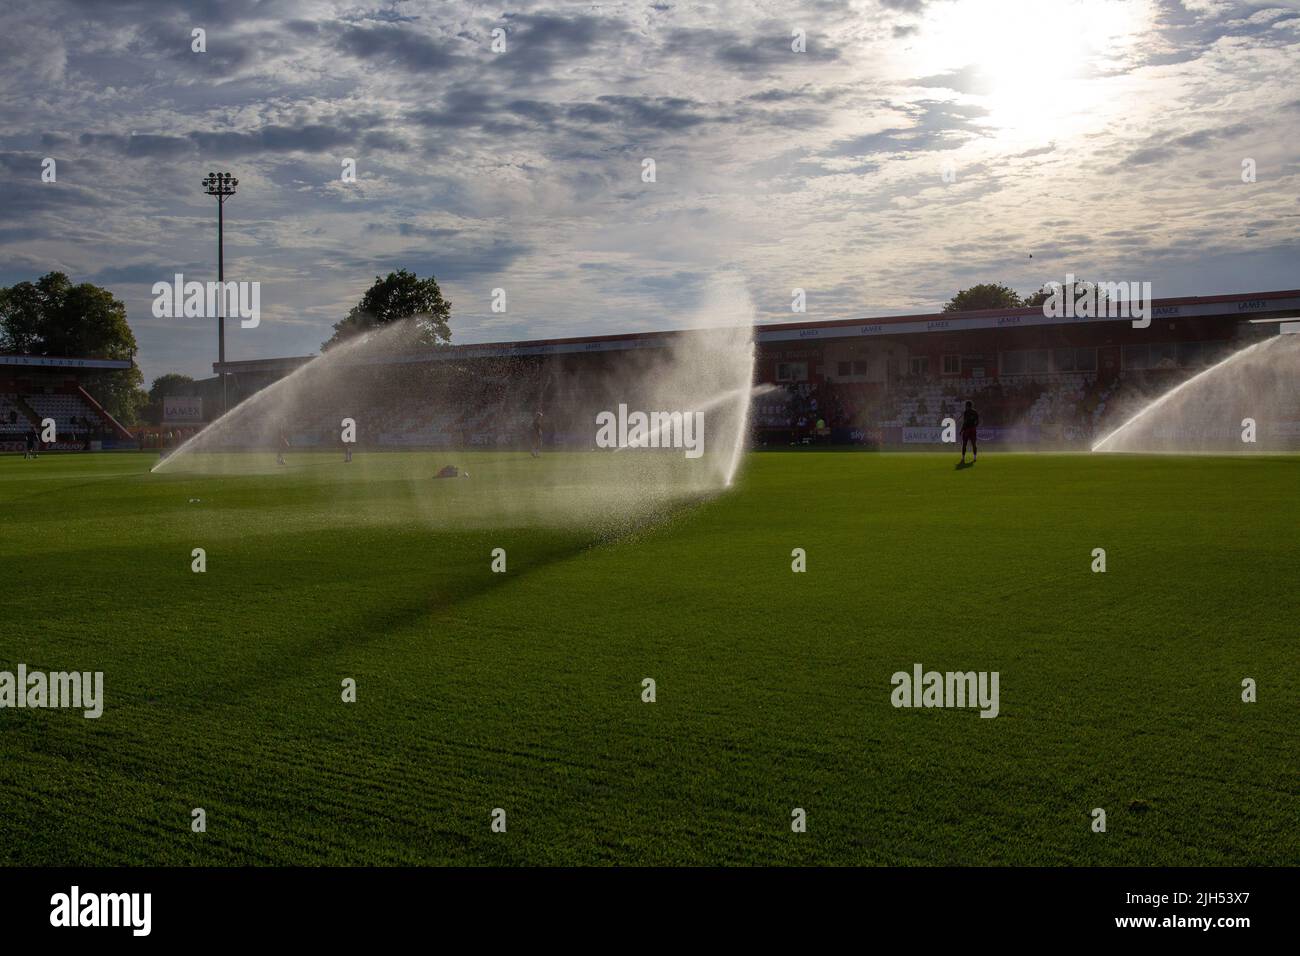 Sistema de rociadores de agua en funcionamiento en el estadio de fútbol antes del partido. Foto de stock